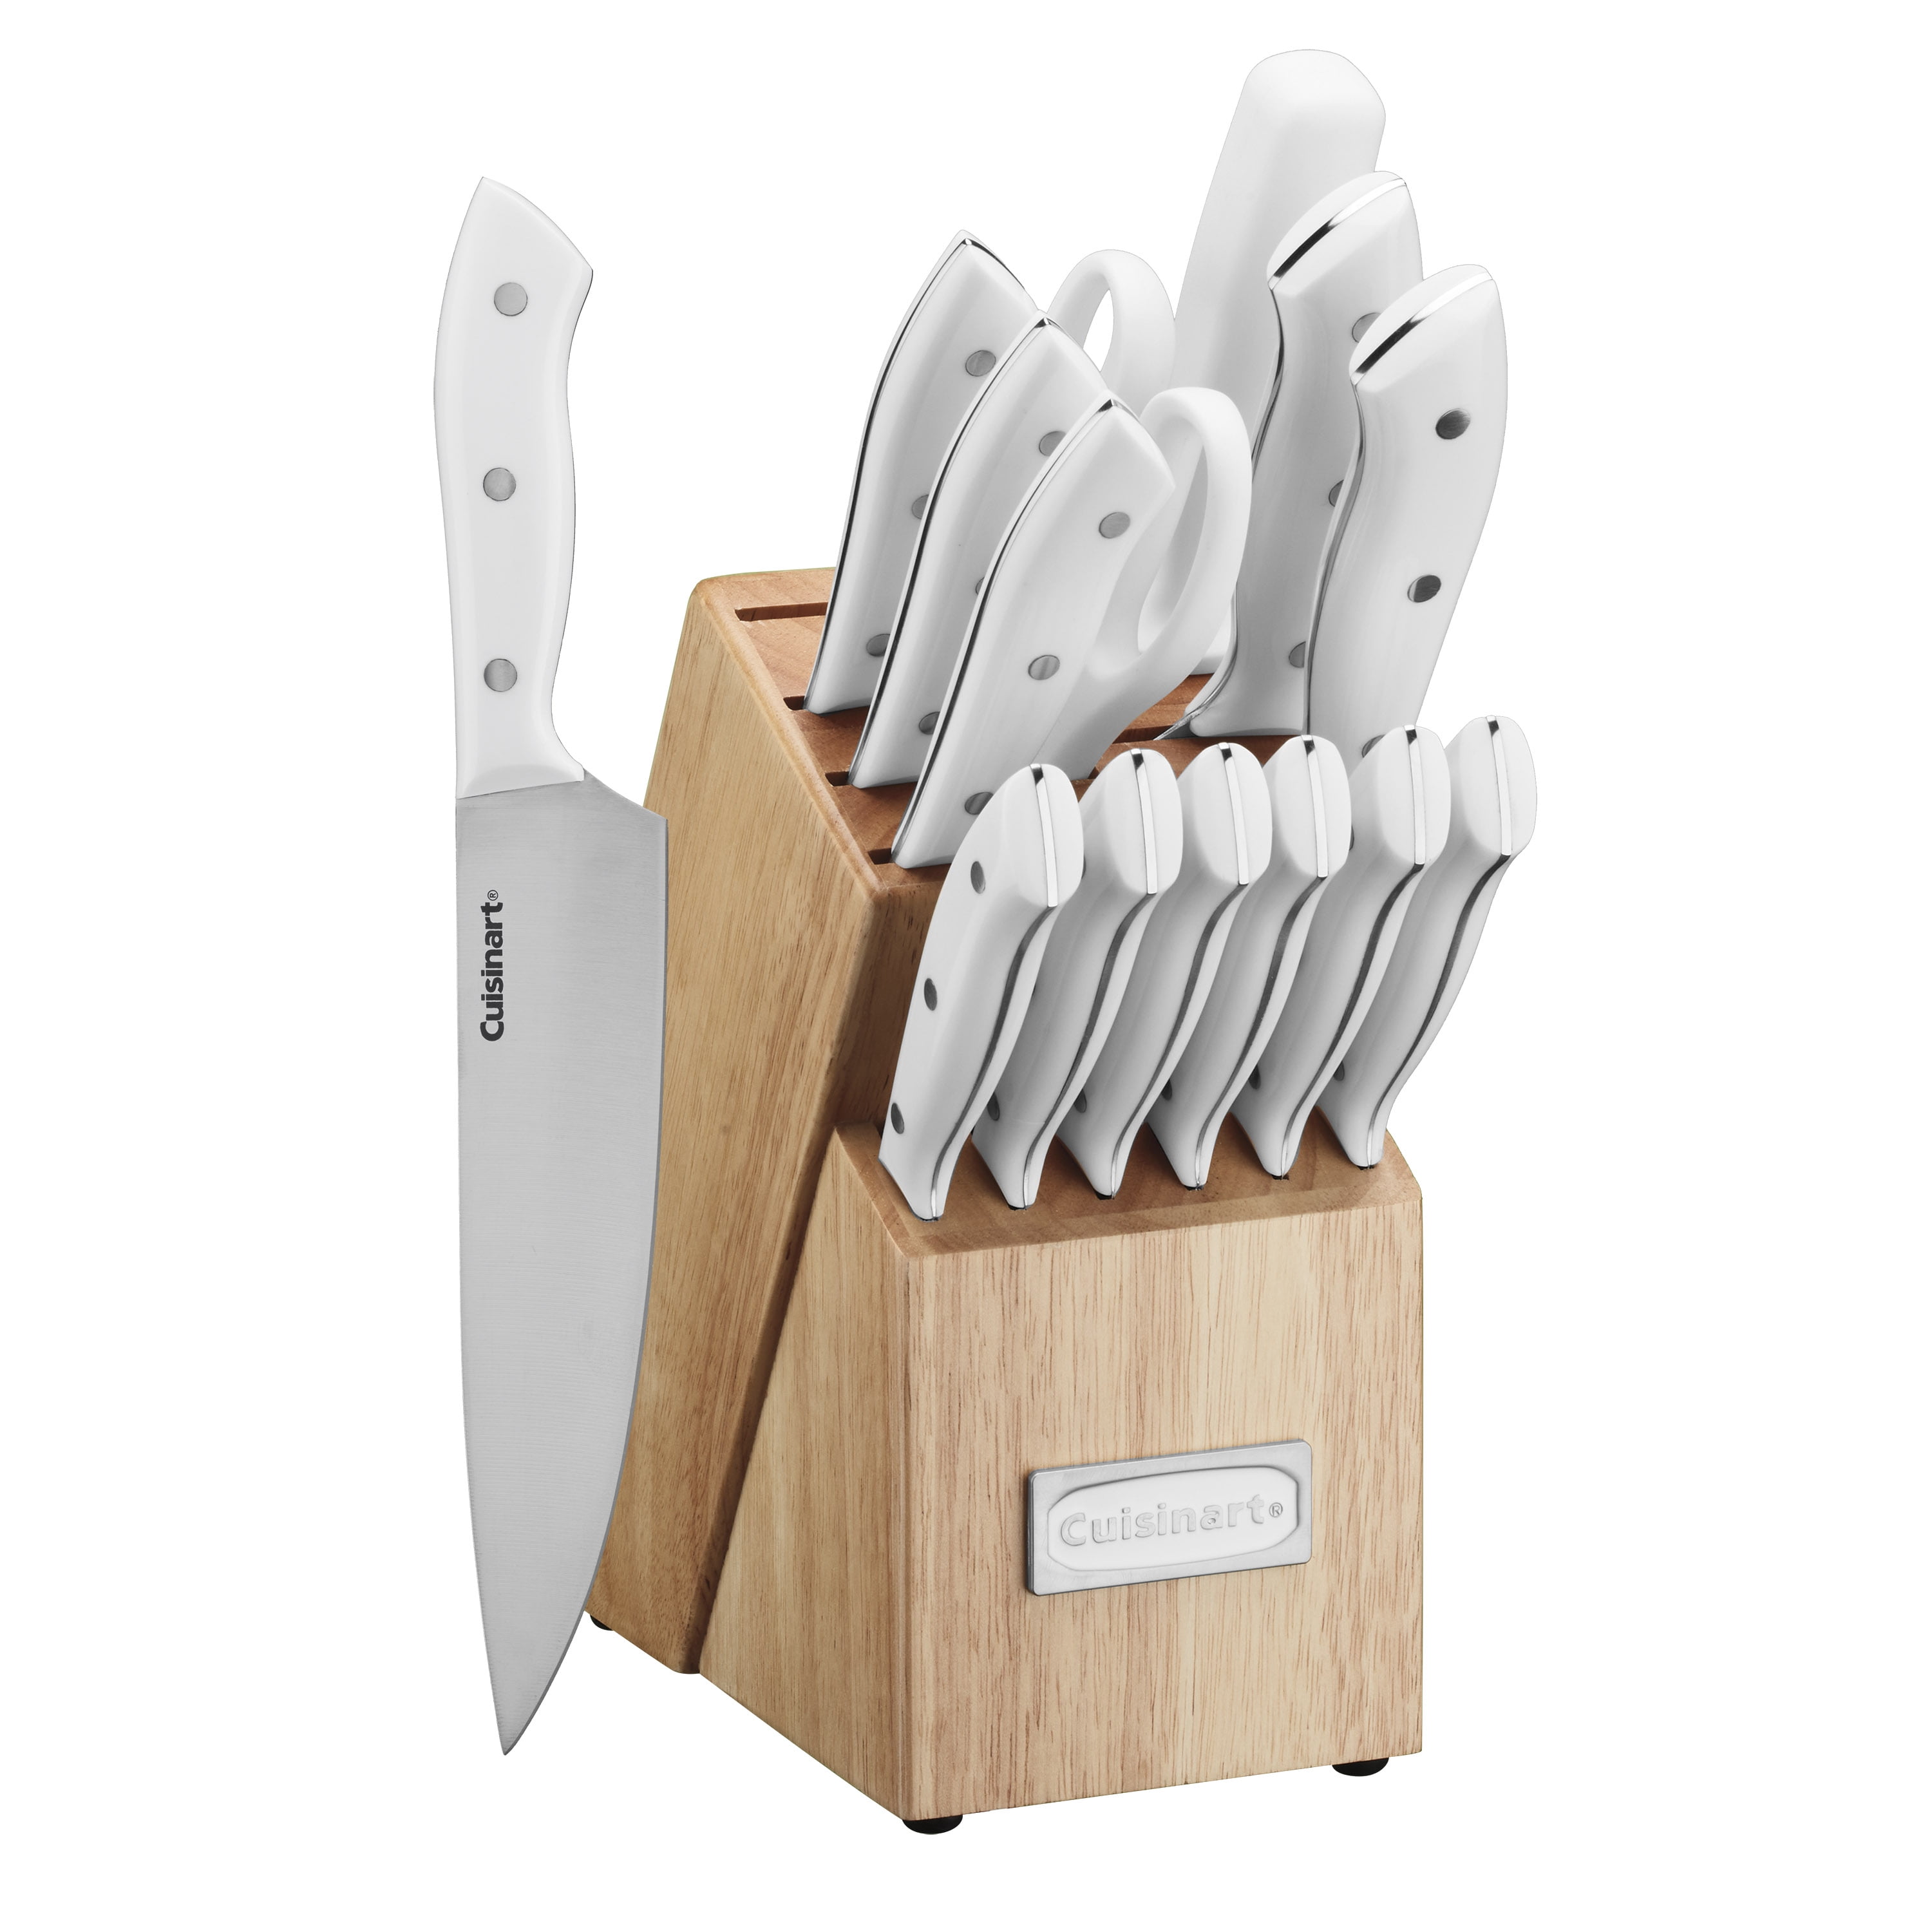 Cuisinart Graphix 15-Piece Knife Block Set + Reviews